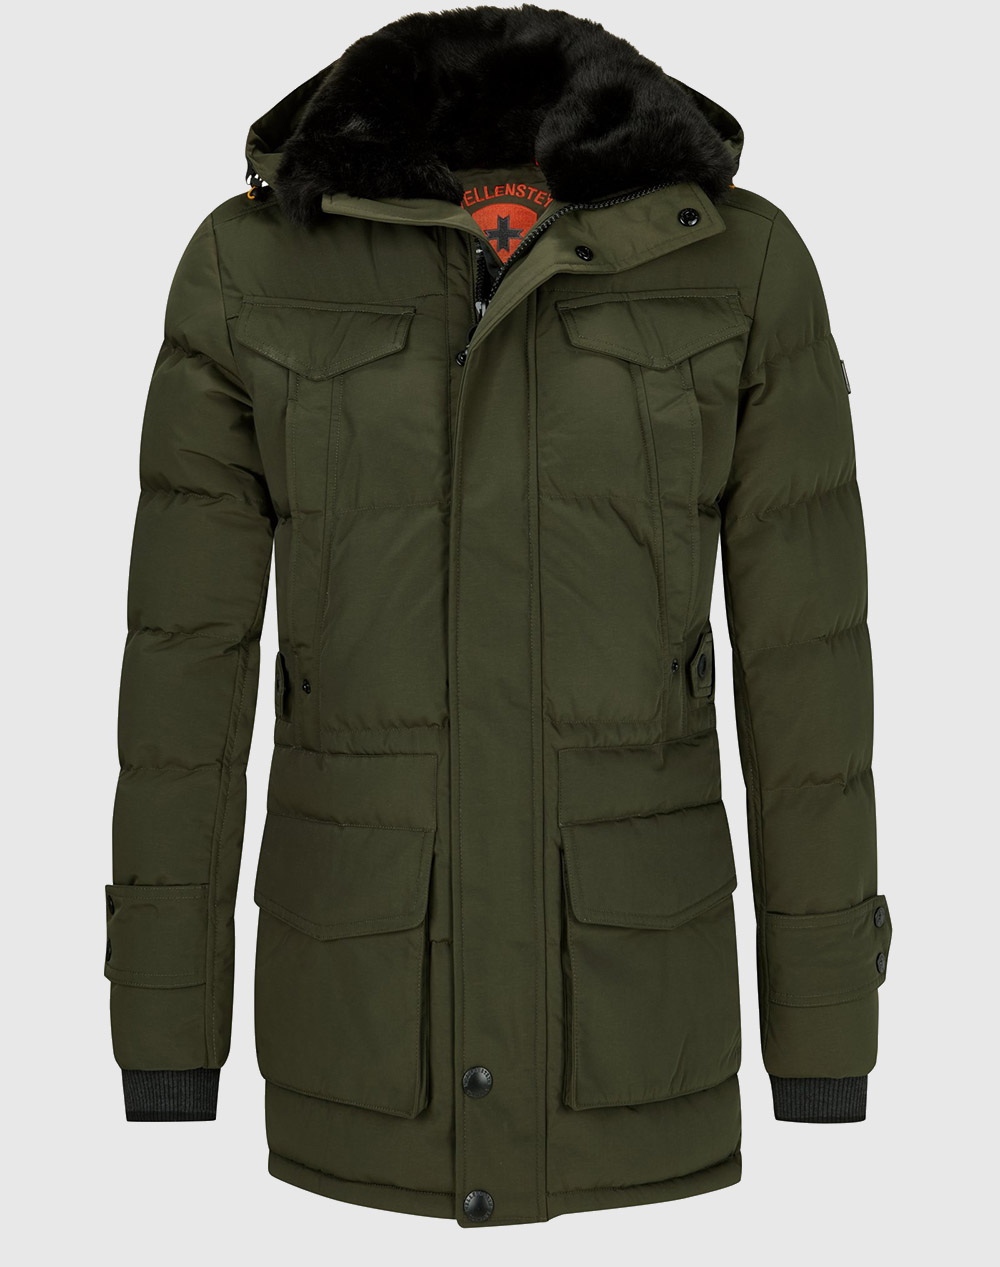 WELLENSTEYN jacket SEAM-870-Darkarmy DarkGreen 3720AWELL3120013_XR17733